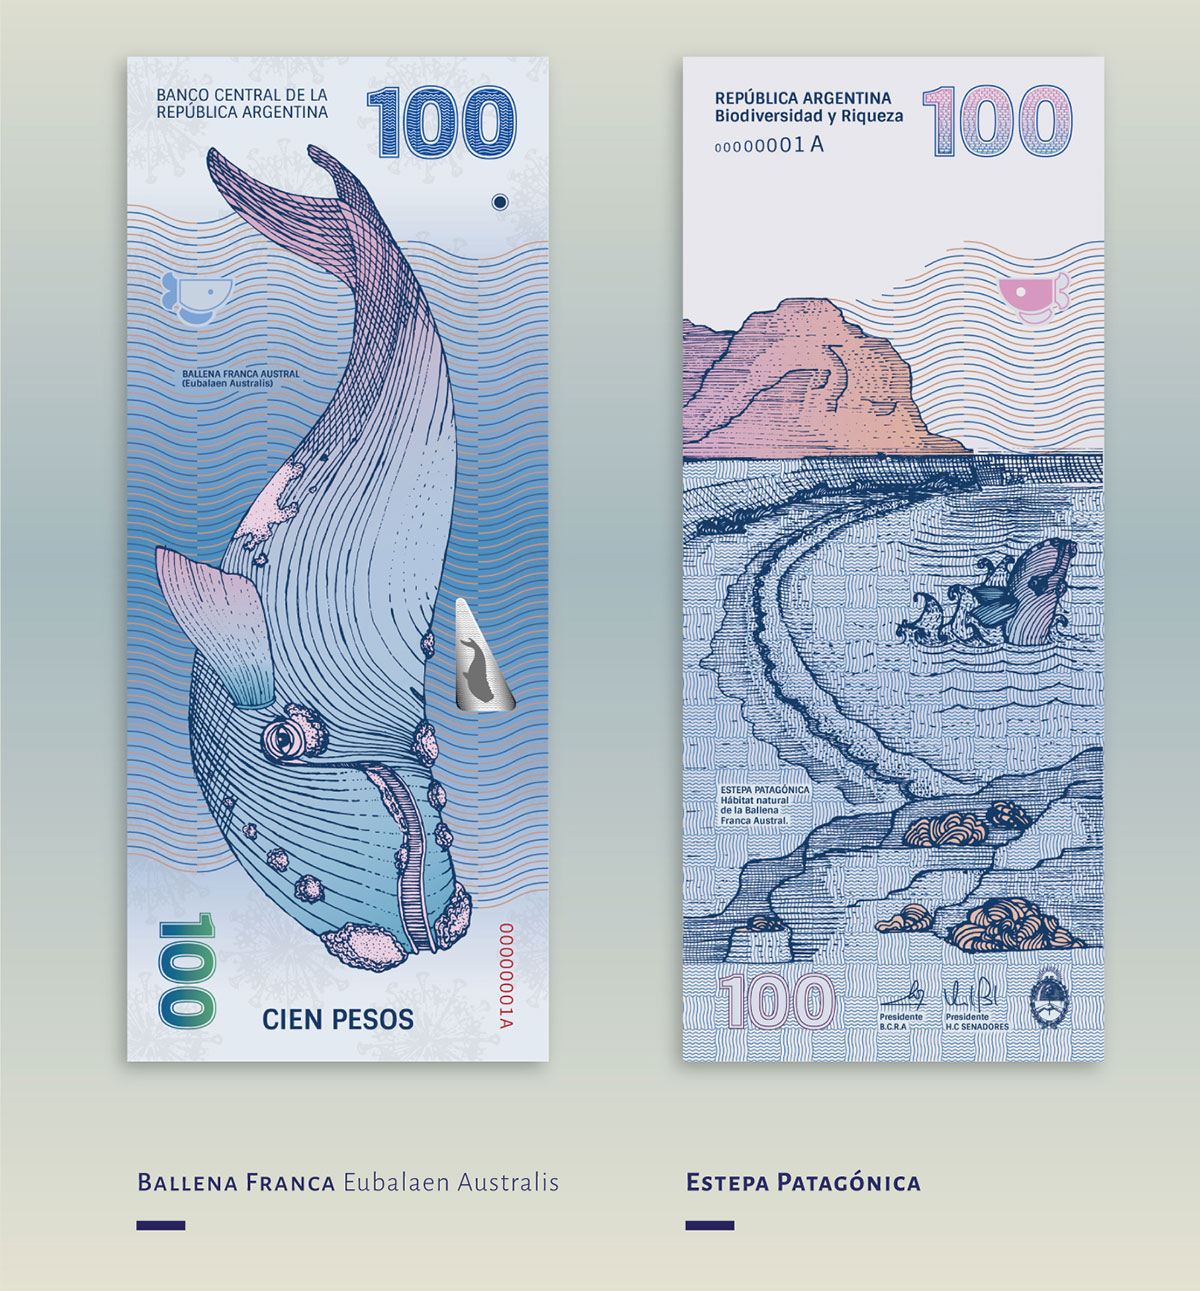 peso-argentino-redesign-com-limao-06